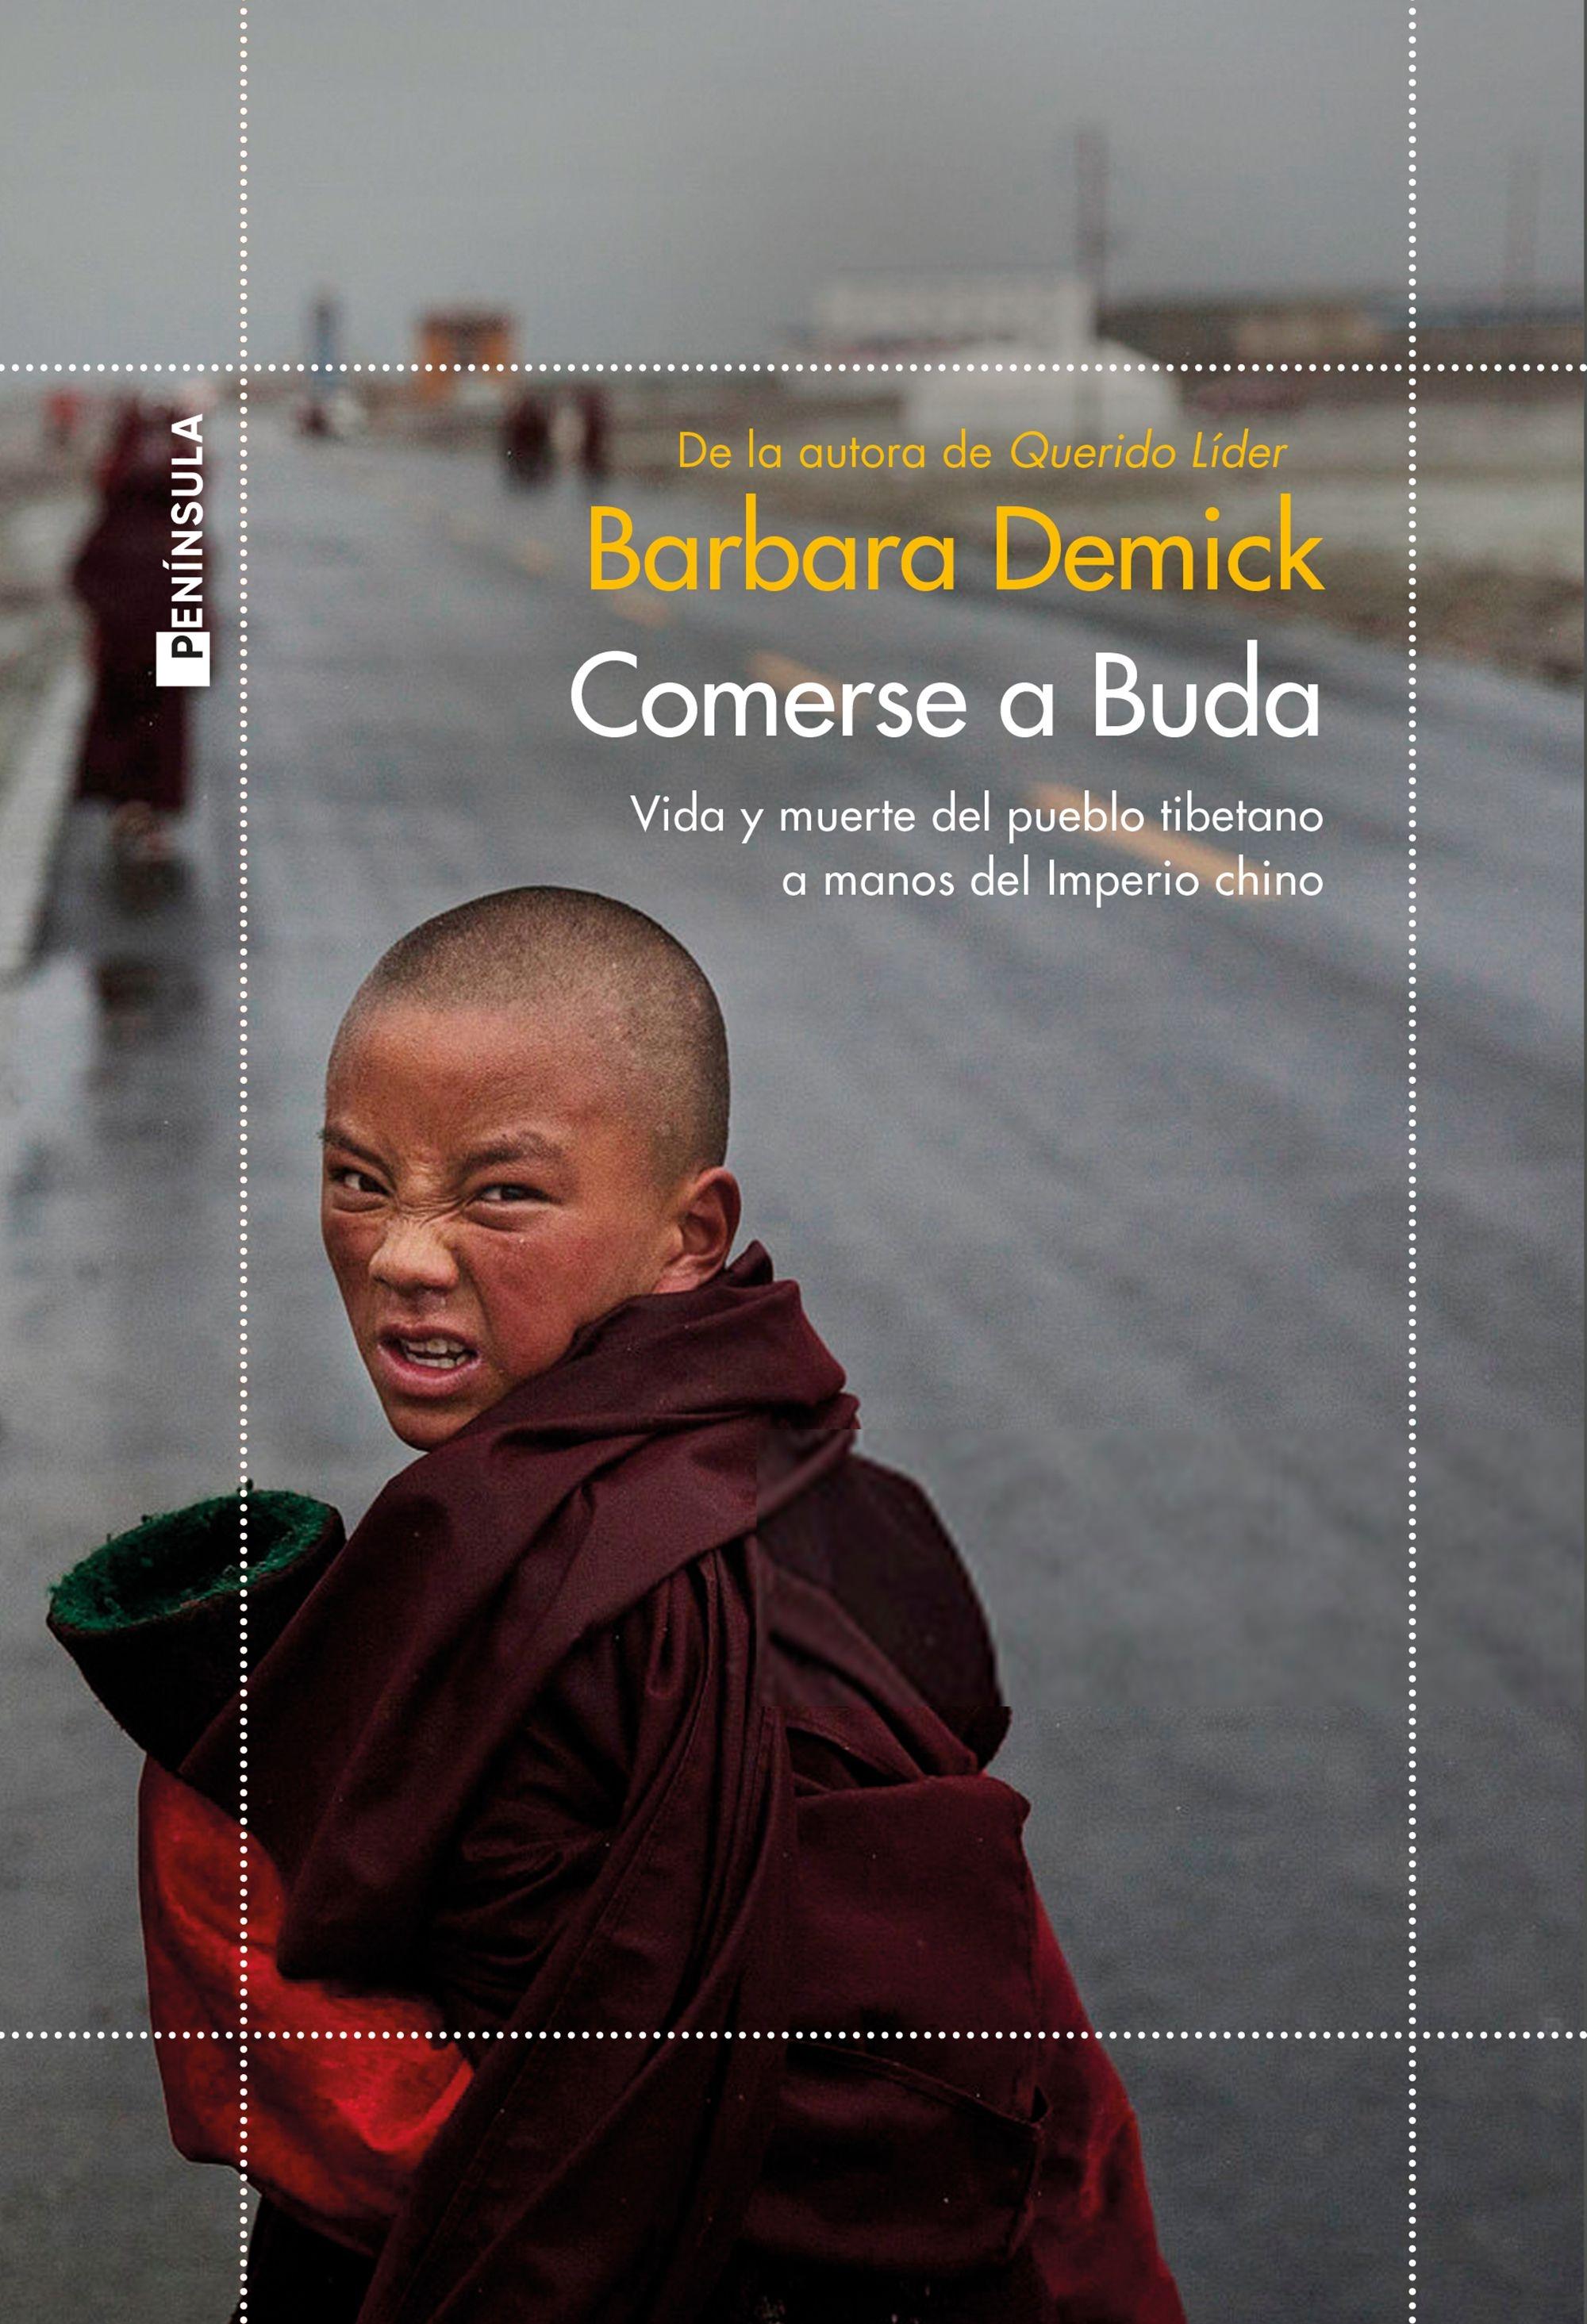 Comerse a Buda "Vida y muerte del pueblo tibetano a manos del Imperio Chino"